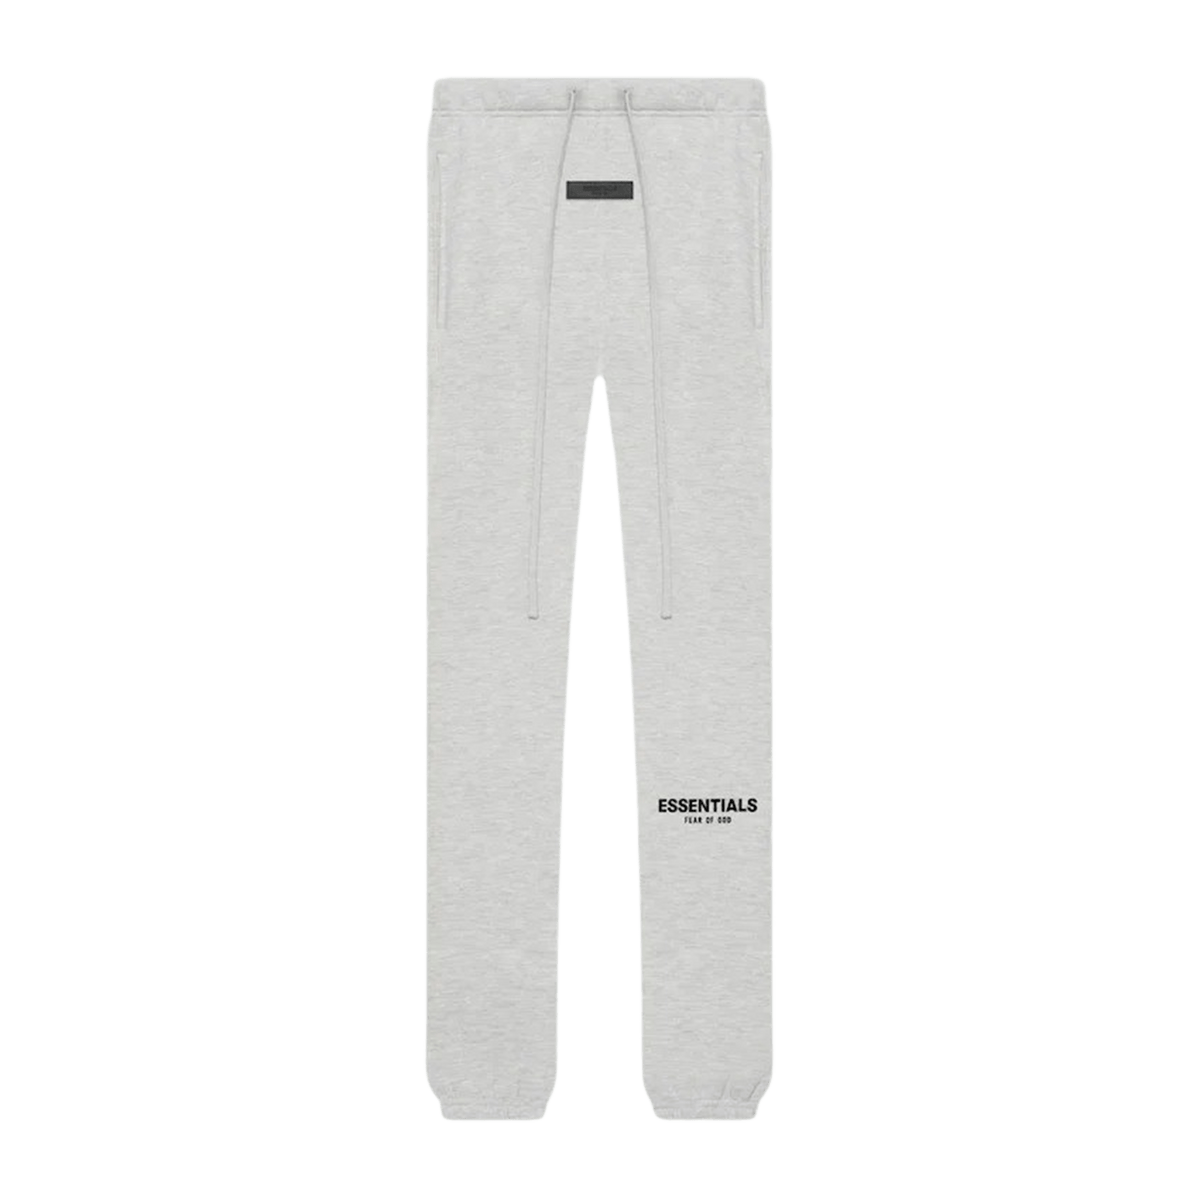 Contrast High Waist Cotton Denim Shorts Essentials Sweatpants 'Light Oatmeal' (SS22) - UrlfreezeShops